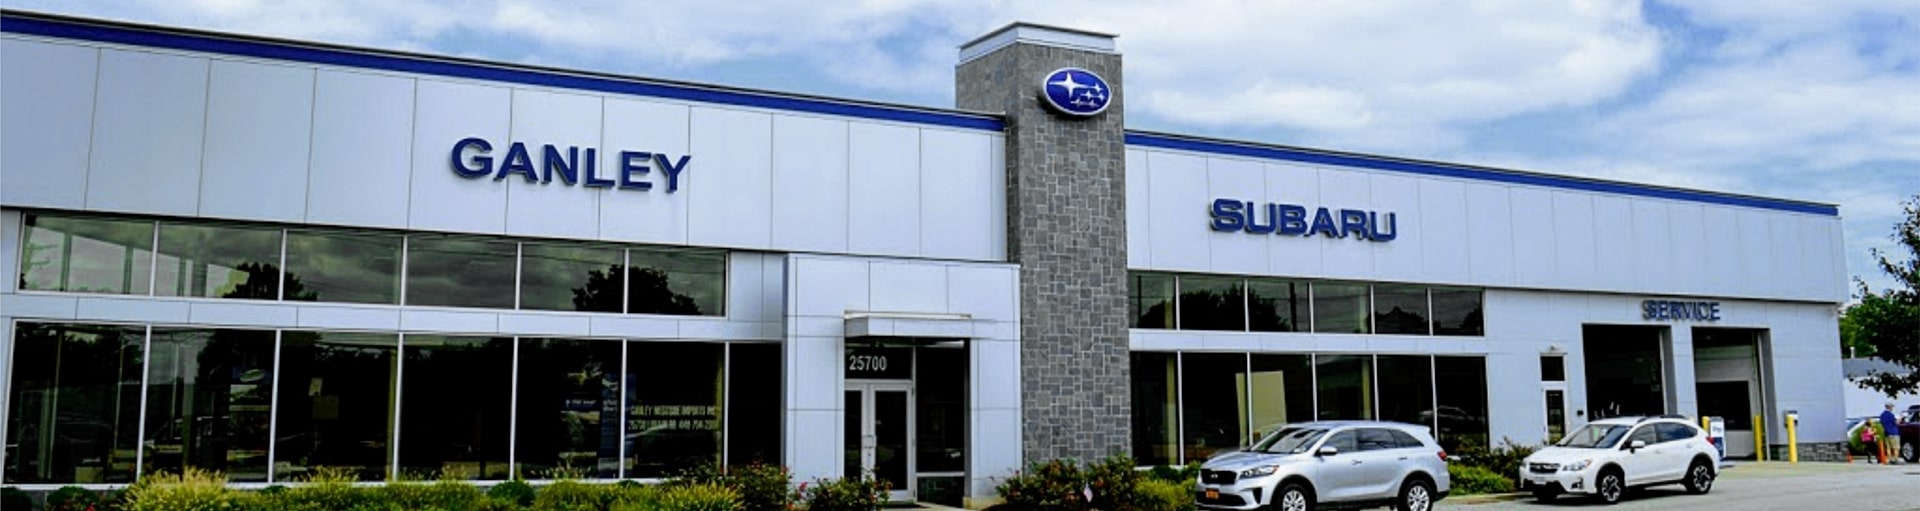 Ganley Westside Subaru Service Center